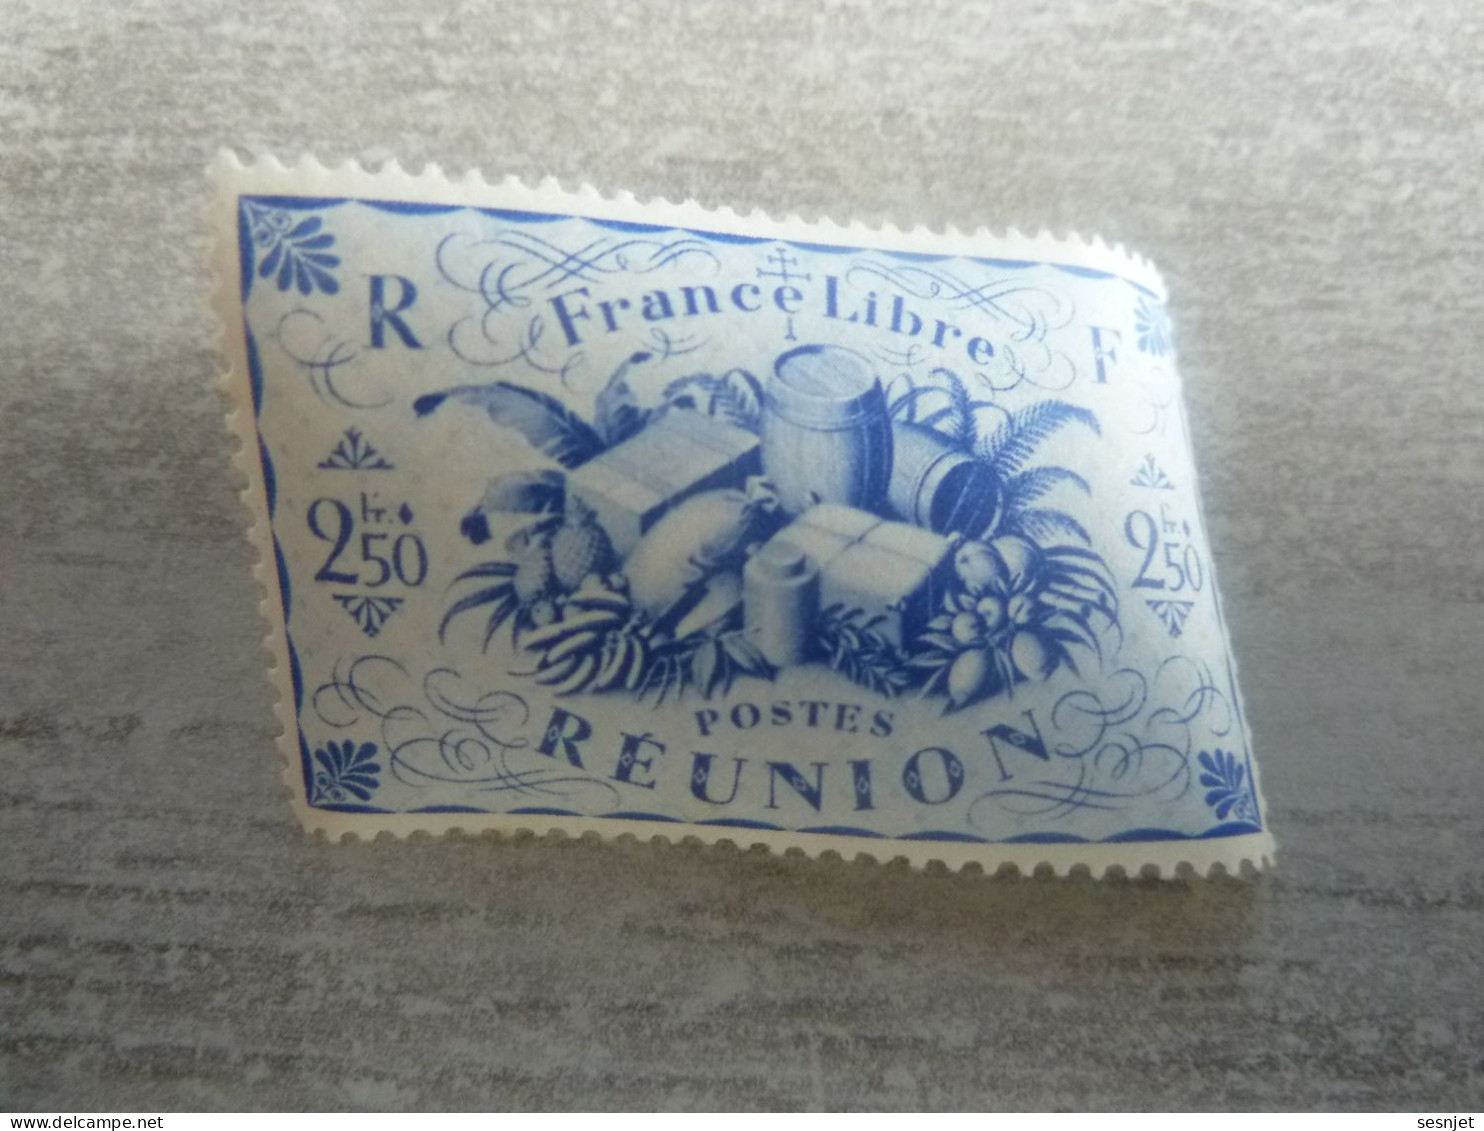 Série De Londres - France-Libre - Réunion  - 2f.50 - Yt 242 - Outremer - Neuf Sans Trace De Charnière - Année 1943 - - Nuovi